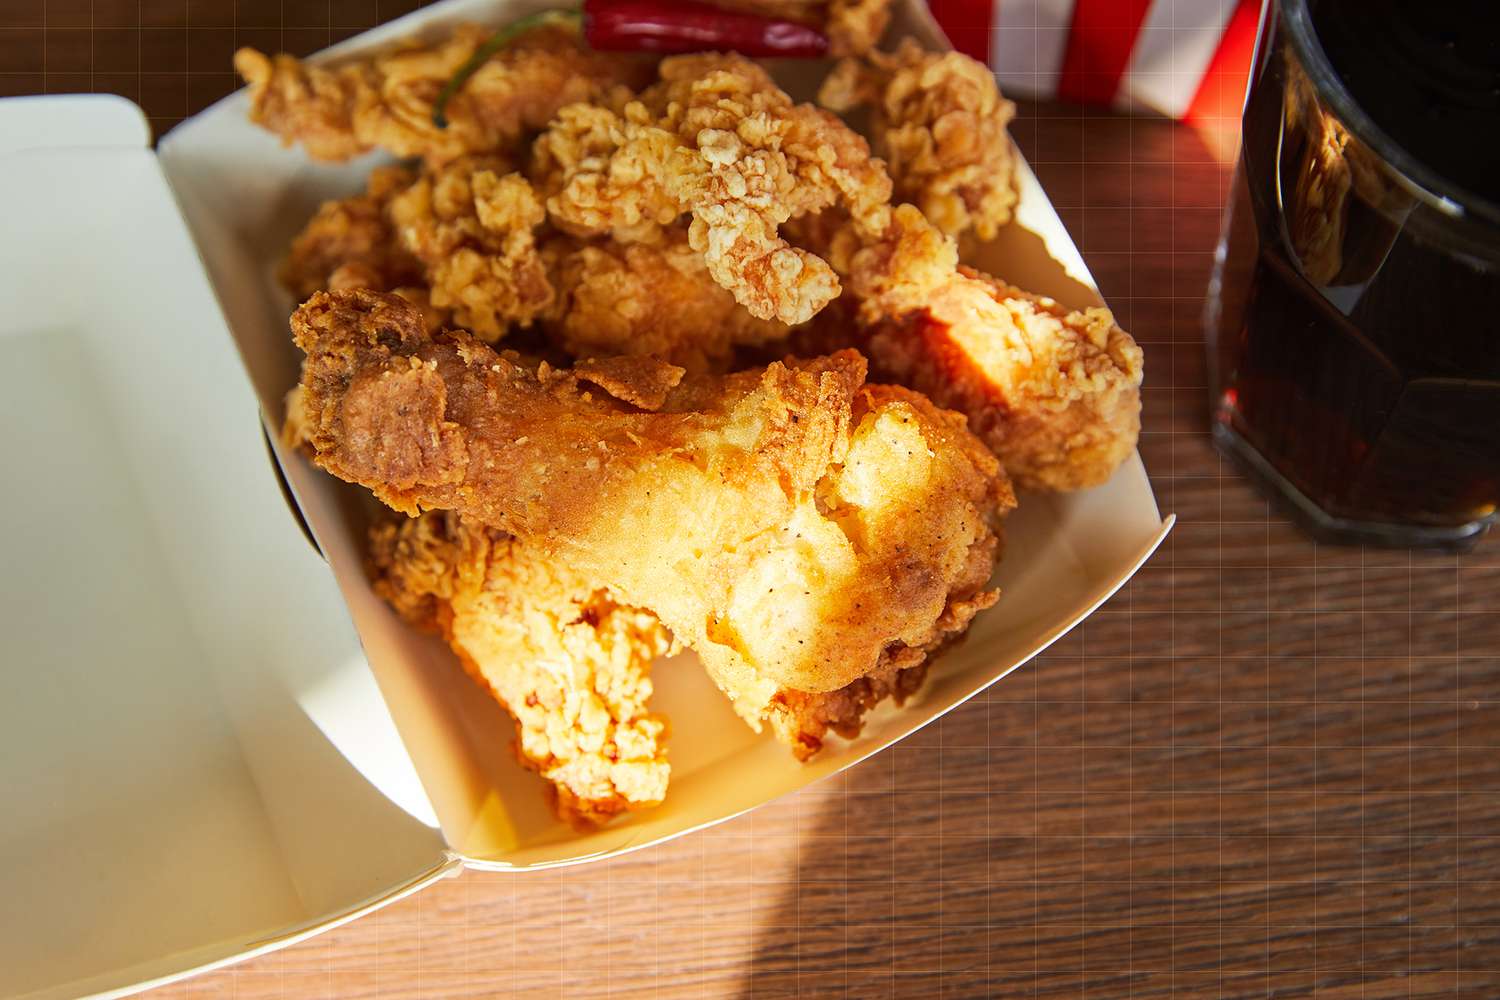 El pollo frito sobre la mesa y los refrescos